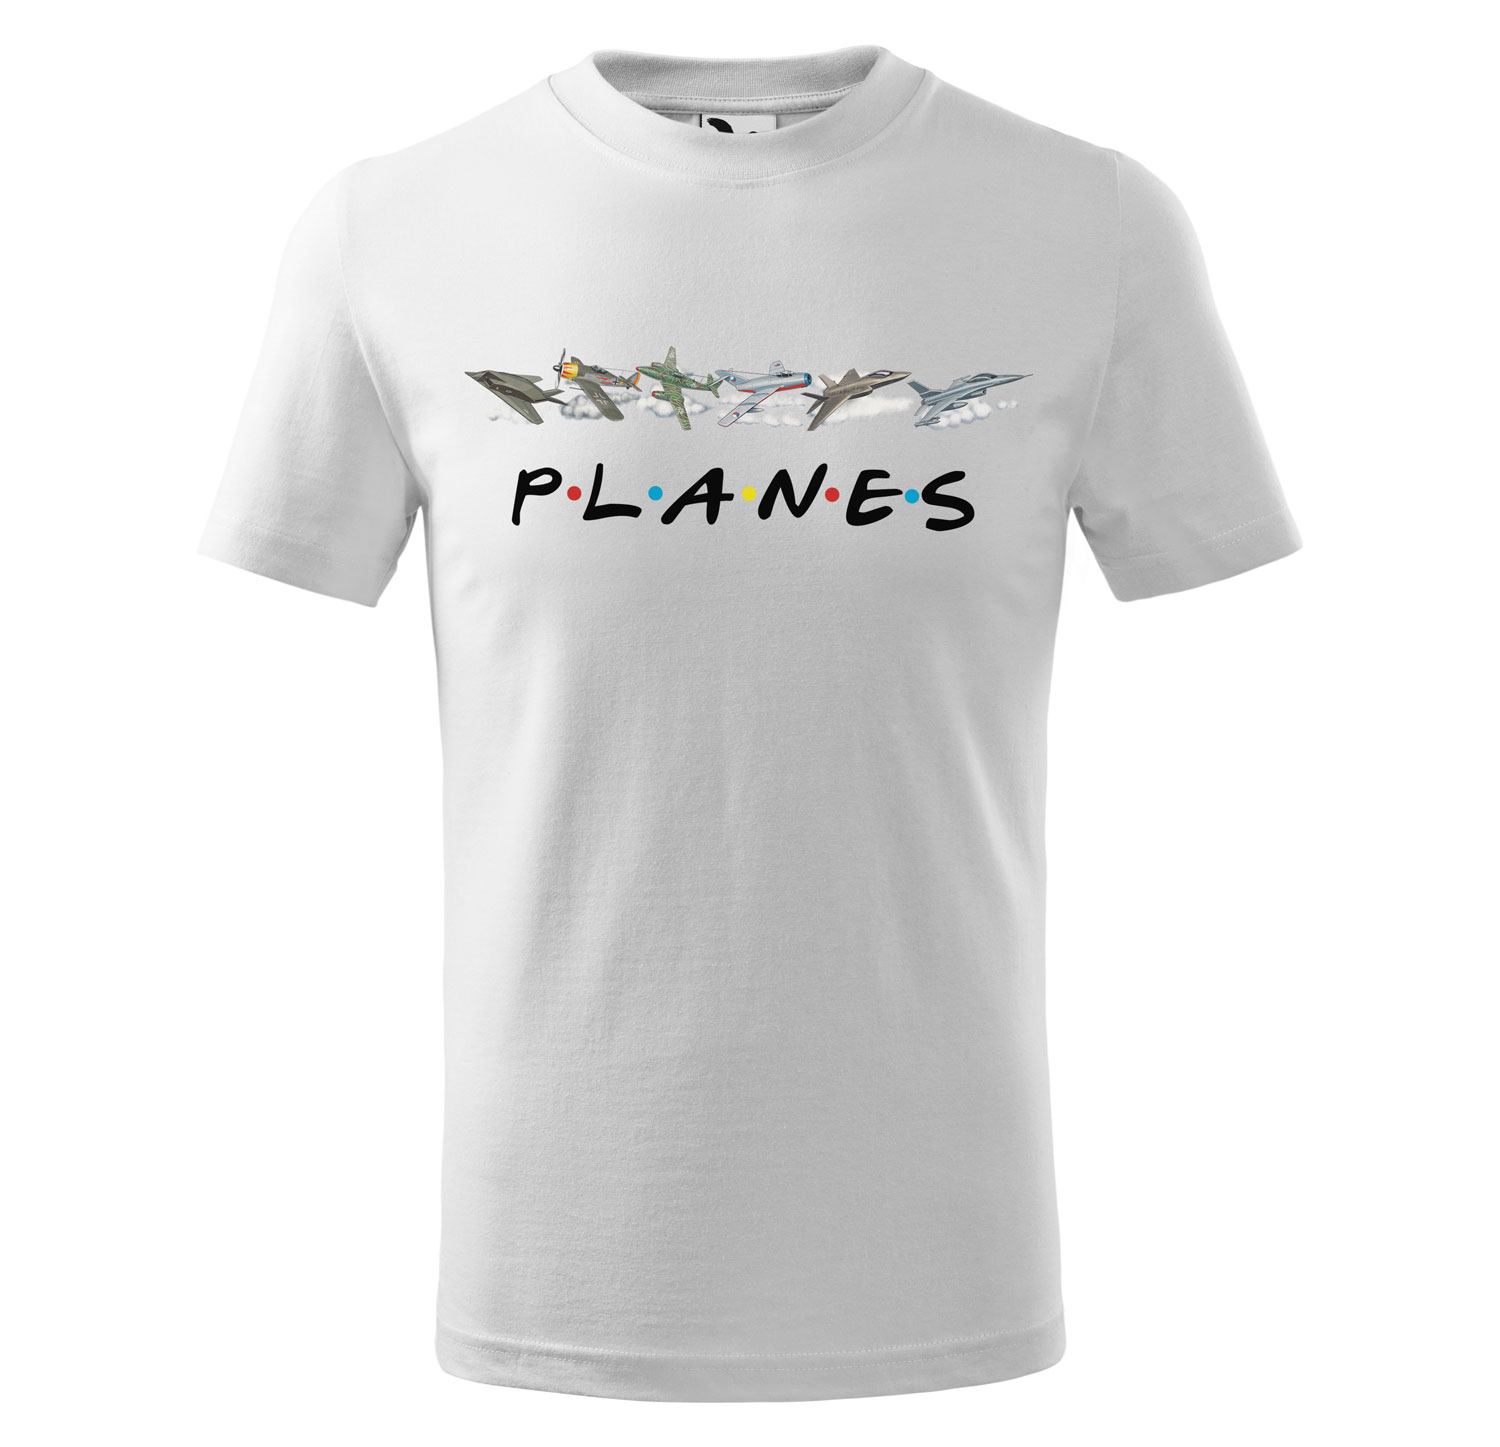 Tričko Planes - dětské (Velikost: 134, Barva trička: Bílá)